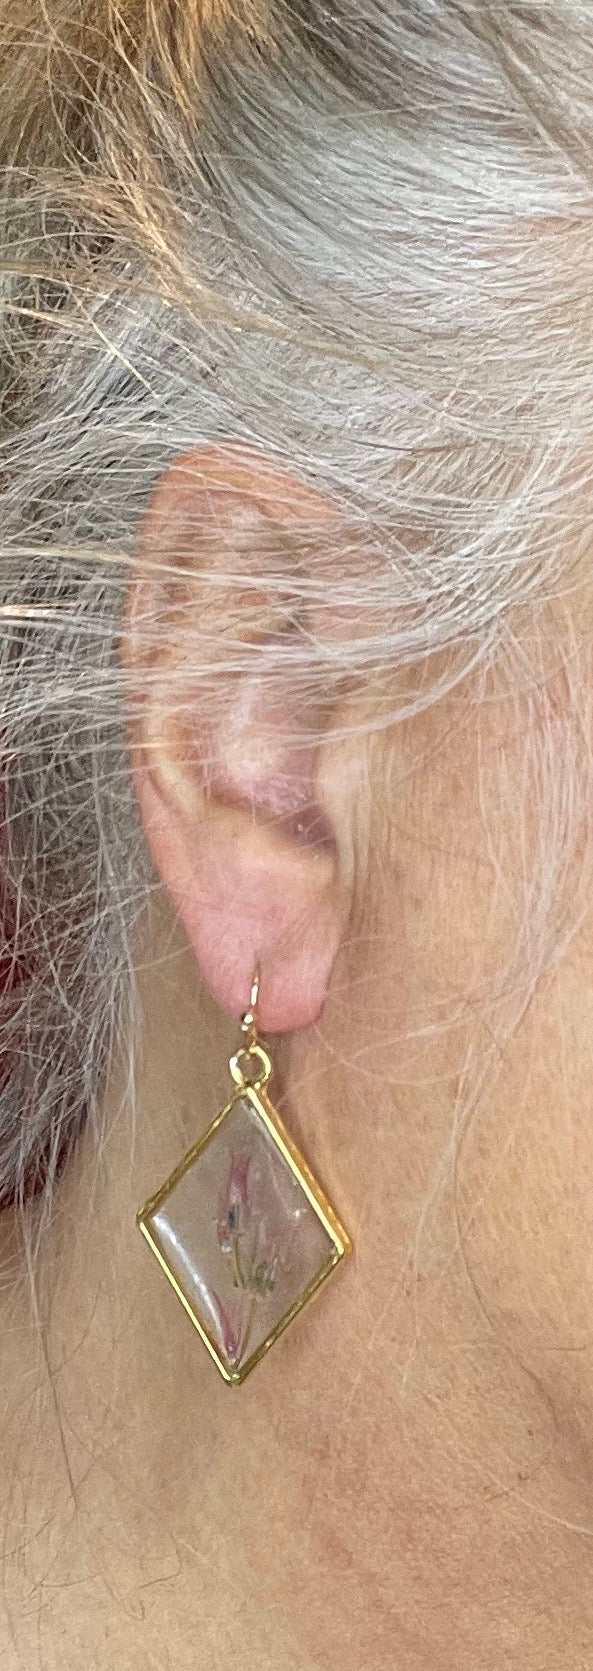 Chives & resin diamond earrings